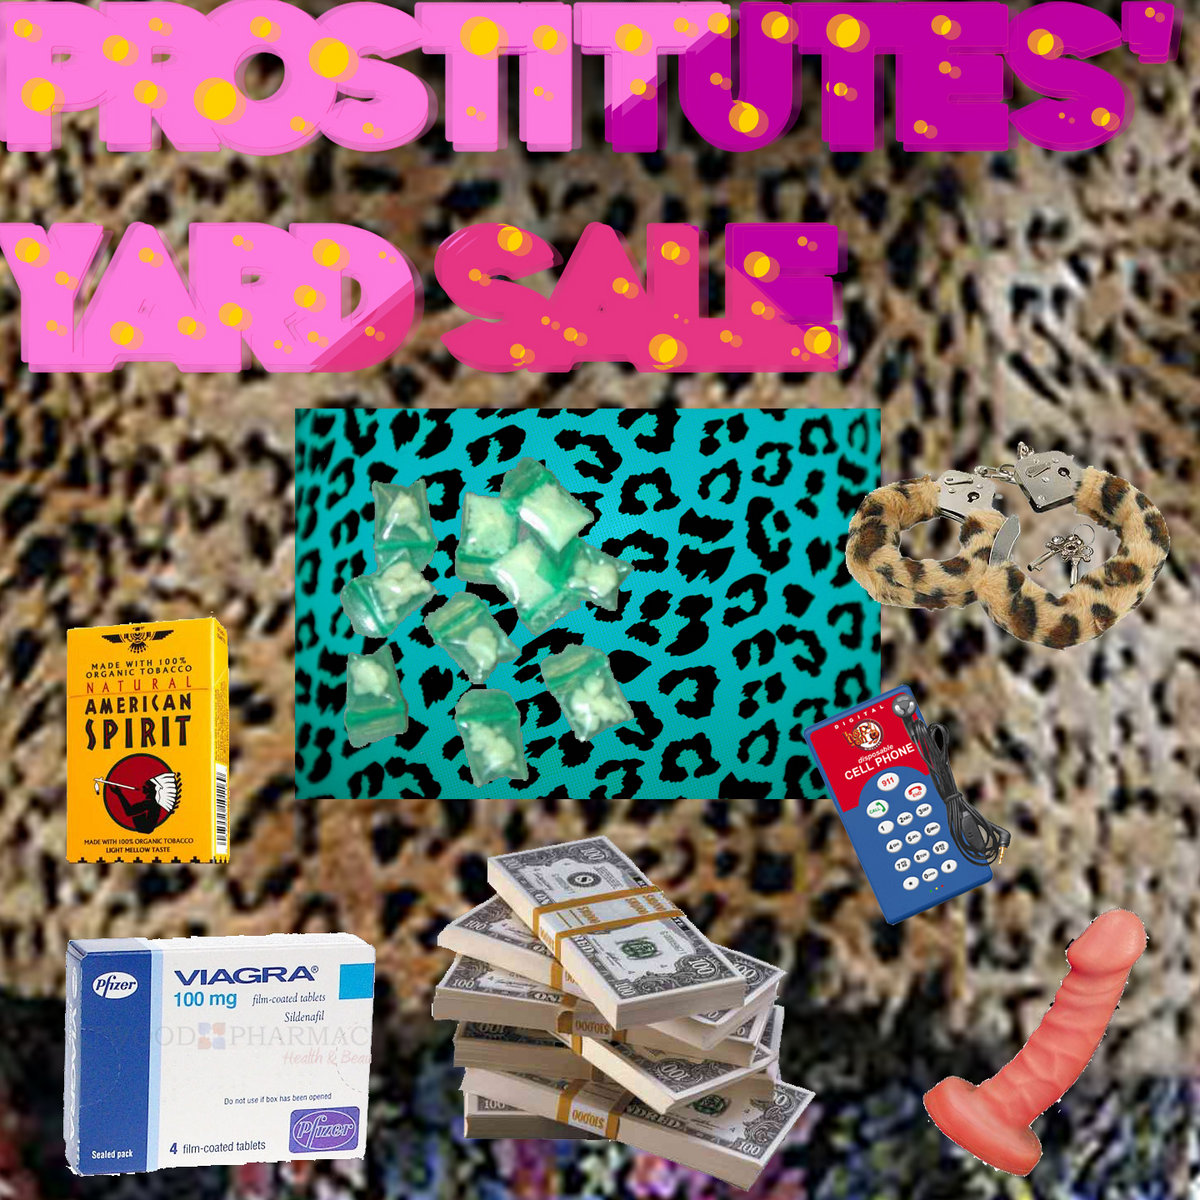 Prostitutes Sale